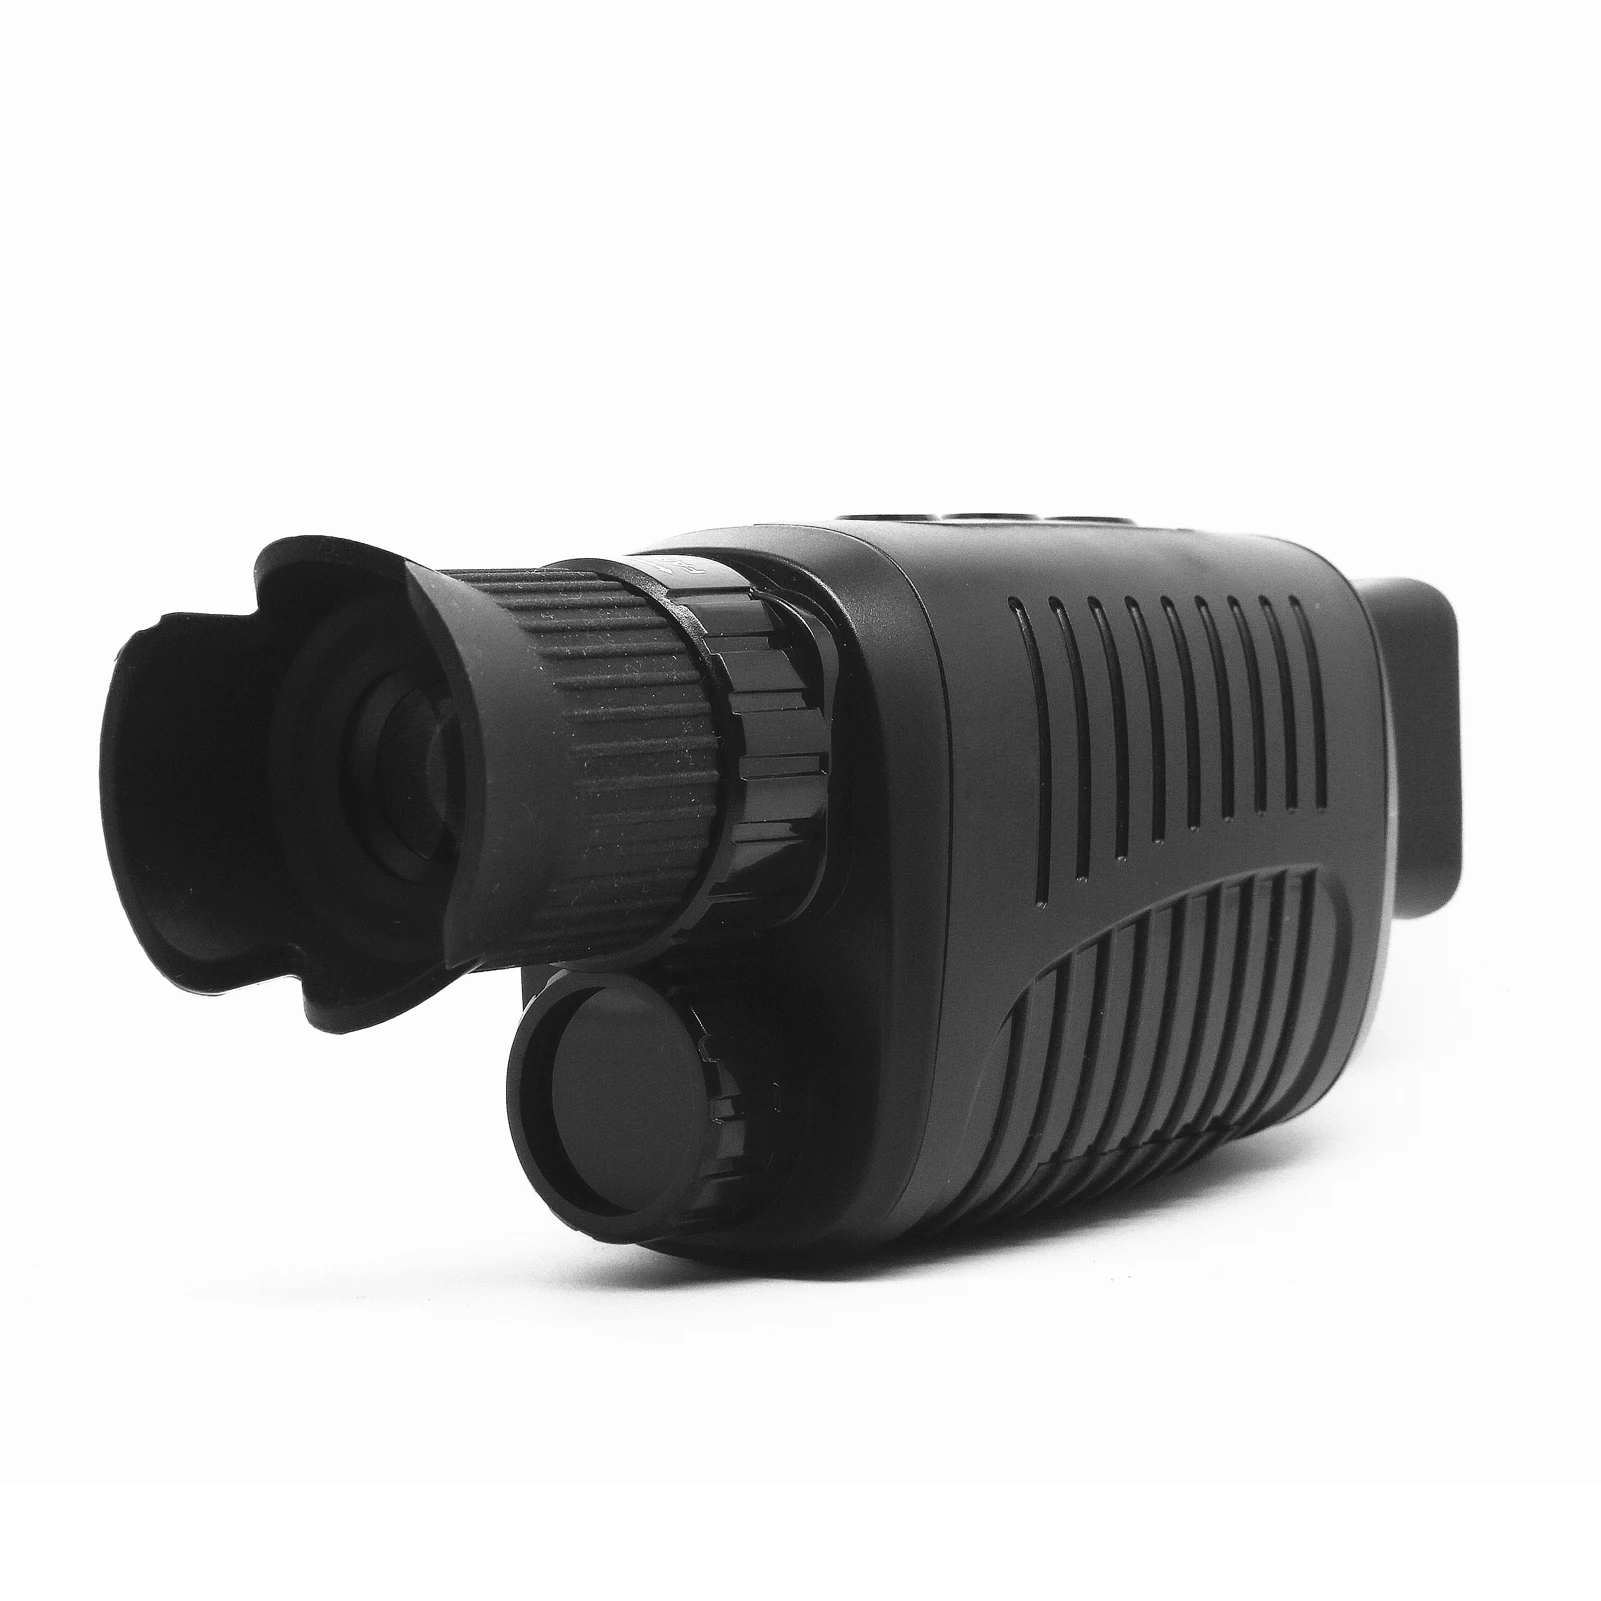 

1080P HD монокуляр устройство ночного видения Инфракрасный 5-кратный цифровой зум охотничий телескоп наружный дневной ночной двойного использования в полной темноте 1000 м